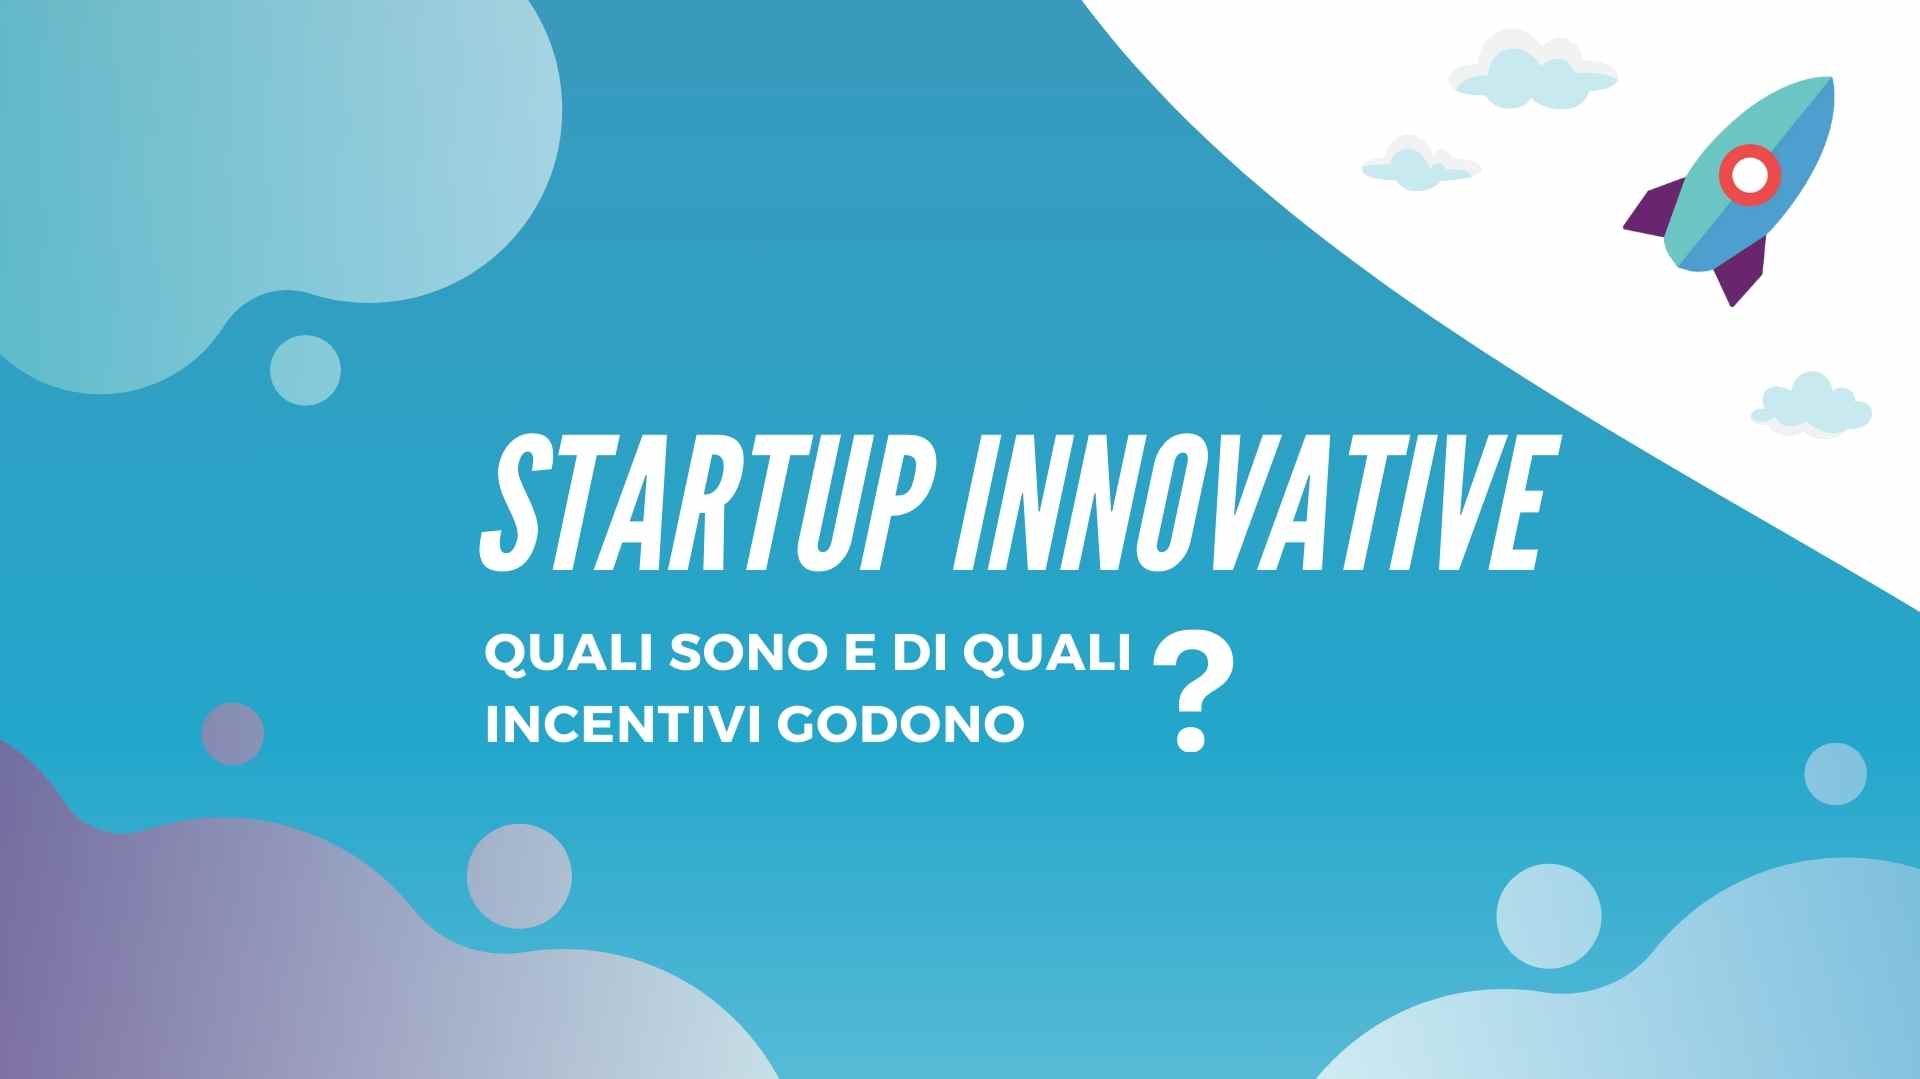 Startup Innovative in Italia: Requisiti e Incentivi per la Crescita